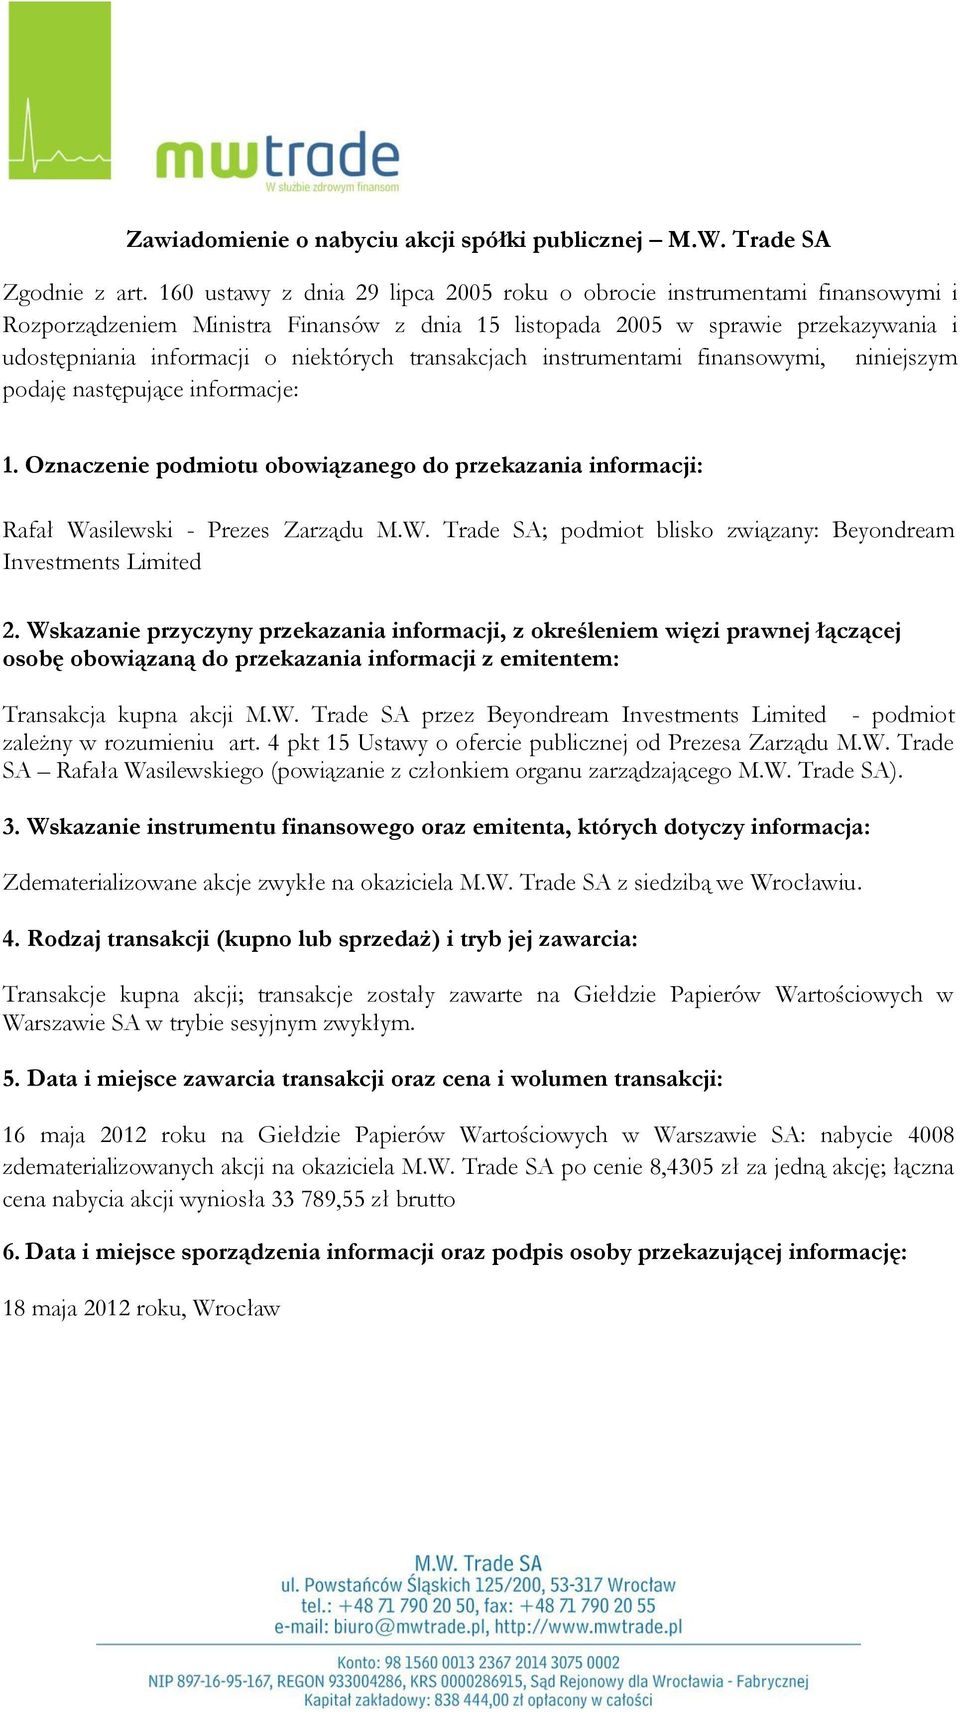 Papierów Wartościowych w Warszawie SA: nabycie 4008 zdematerializowanych